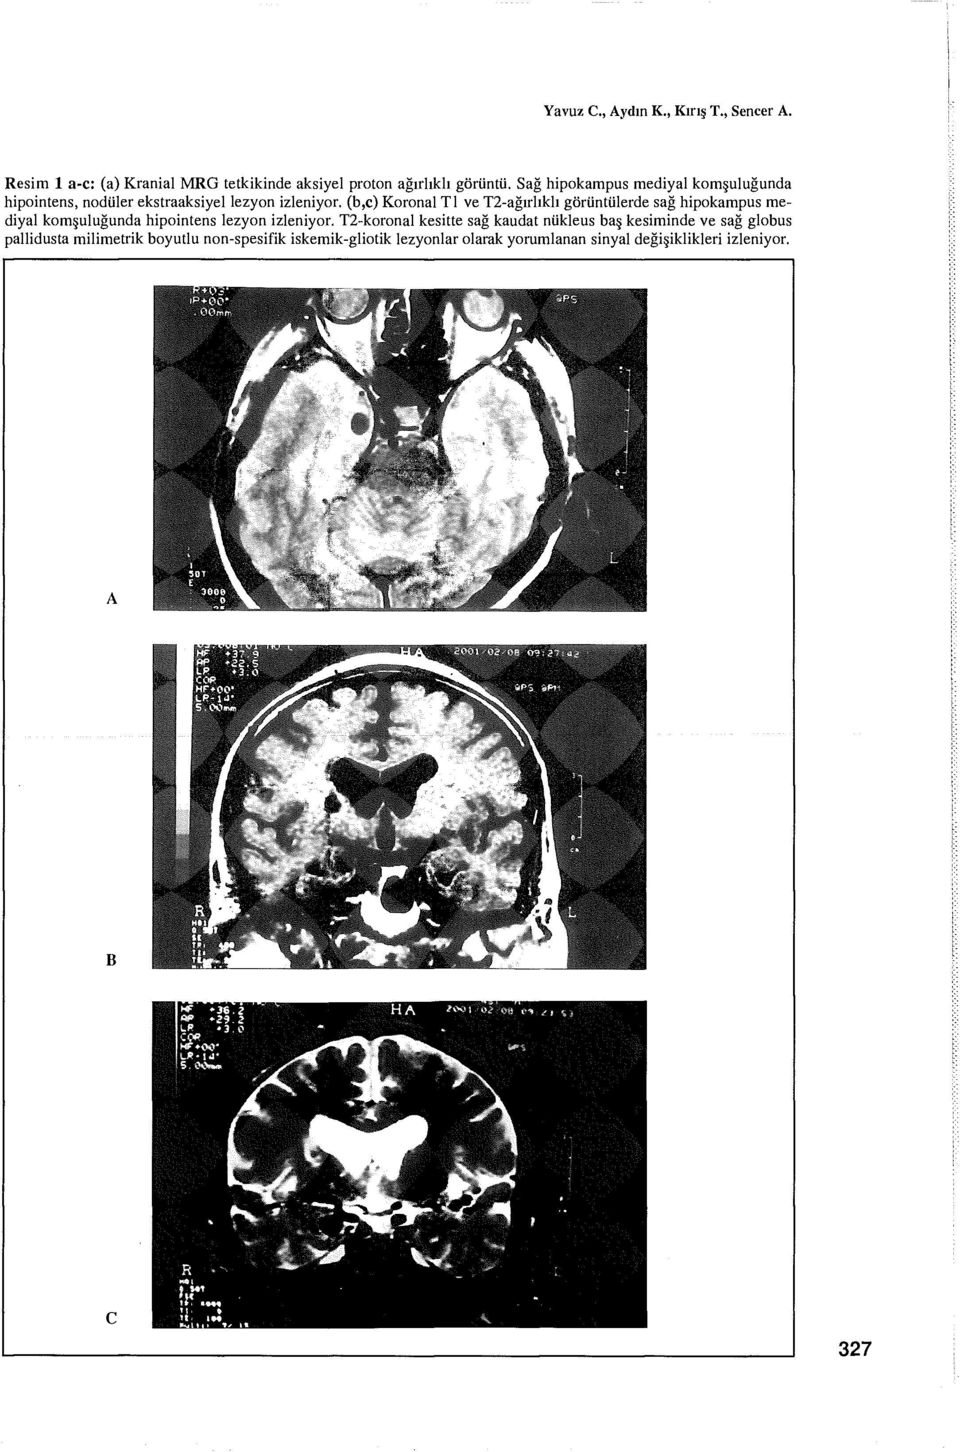 (b,c) Koronal Tl ve T2-ağırlıklı görüntülerde sağ hipokampus mediyal komşuluğunda hipointens lezyon izleniyor.